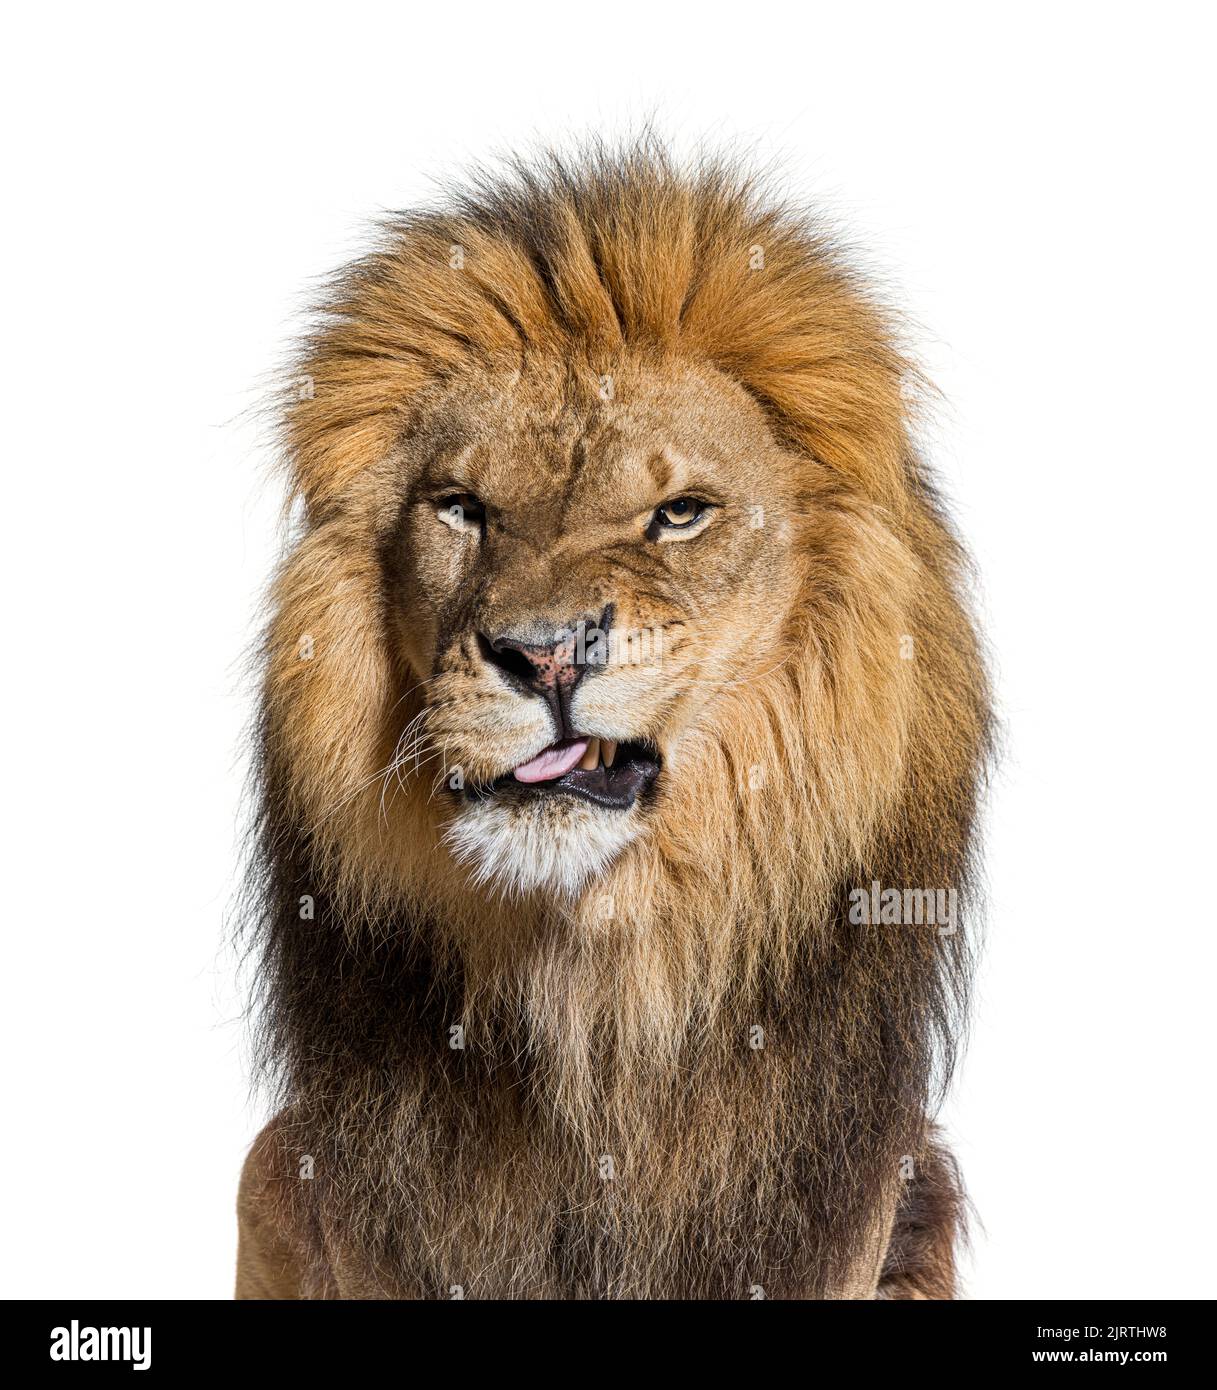 Kopfaufnahme eines Löwen, der ein Gesicht macht und die Kamera anschaut Stockfoto